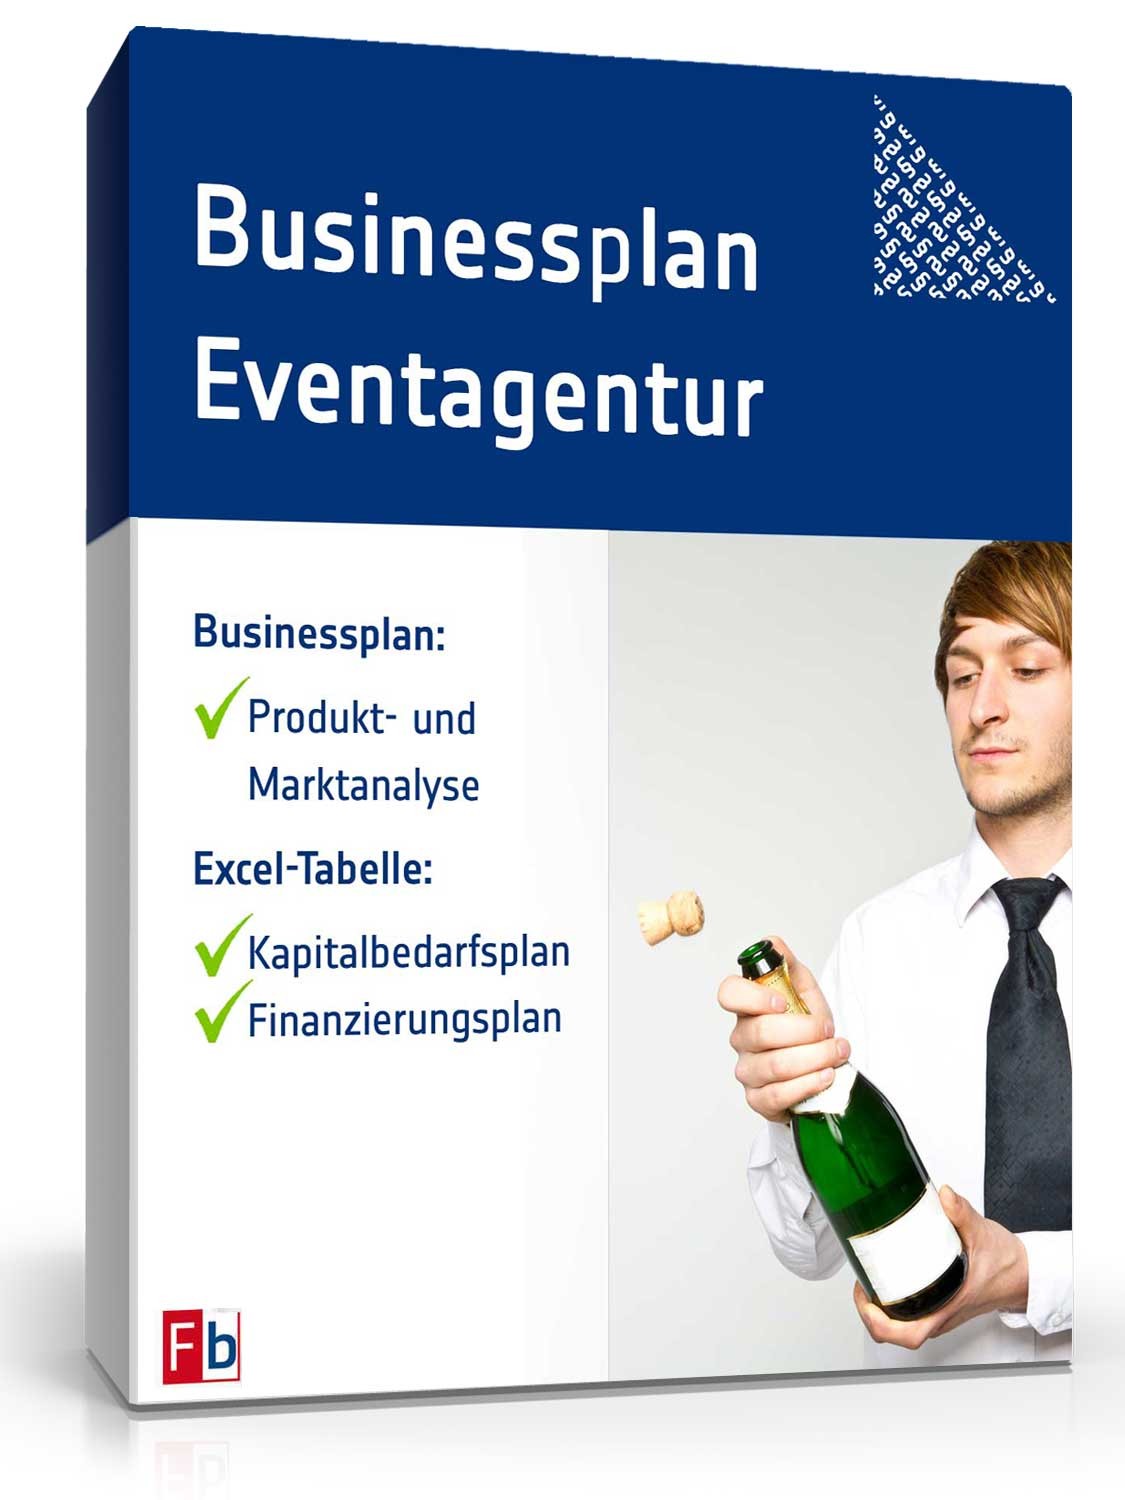 Hauptbild des Produkts: Businessplan Eventagentur